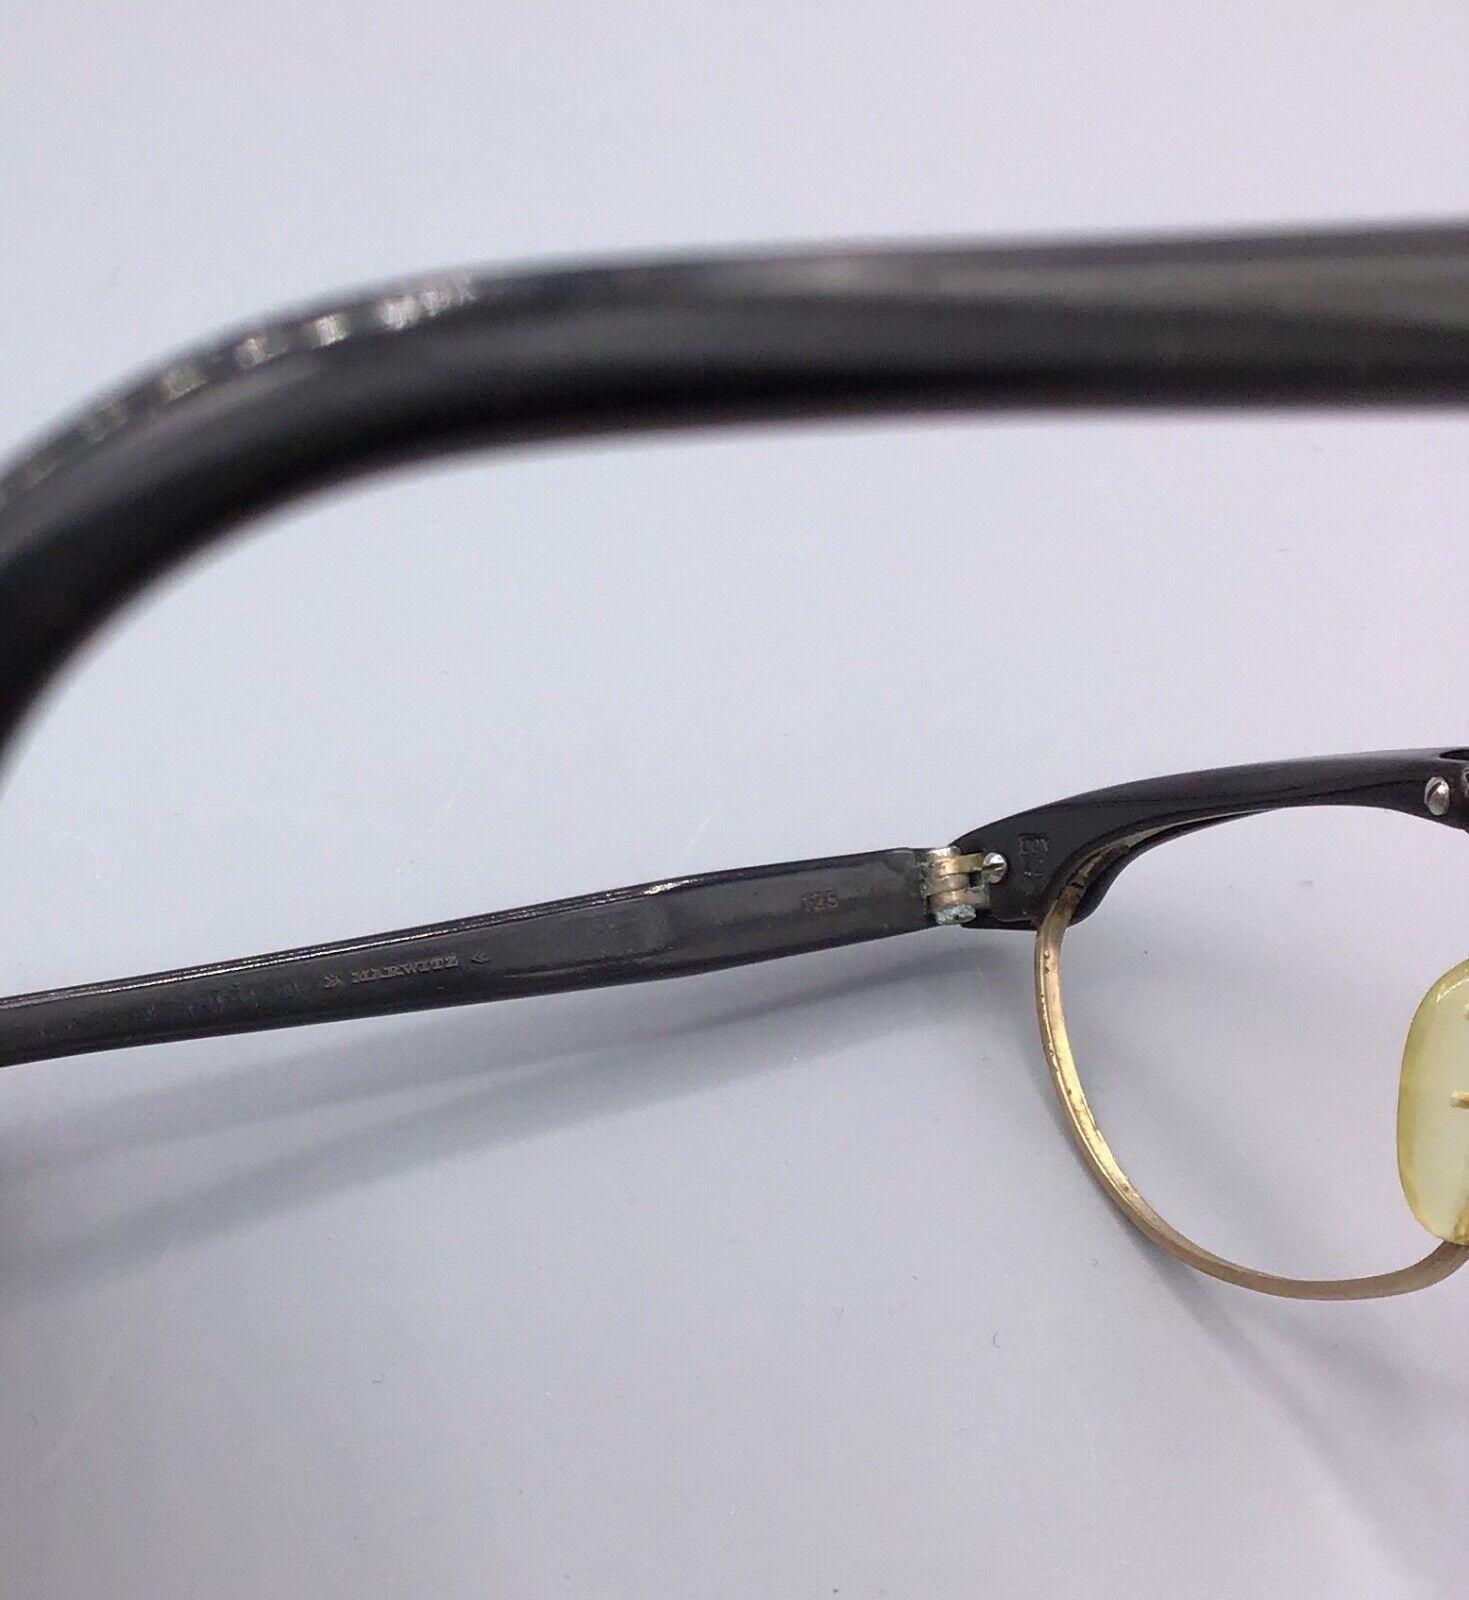 Marwitz occhiale vintage Eyewear frame brillen lunettes model Maturette 16 m/m